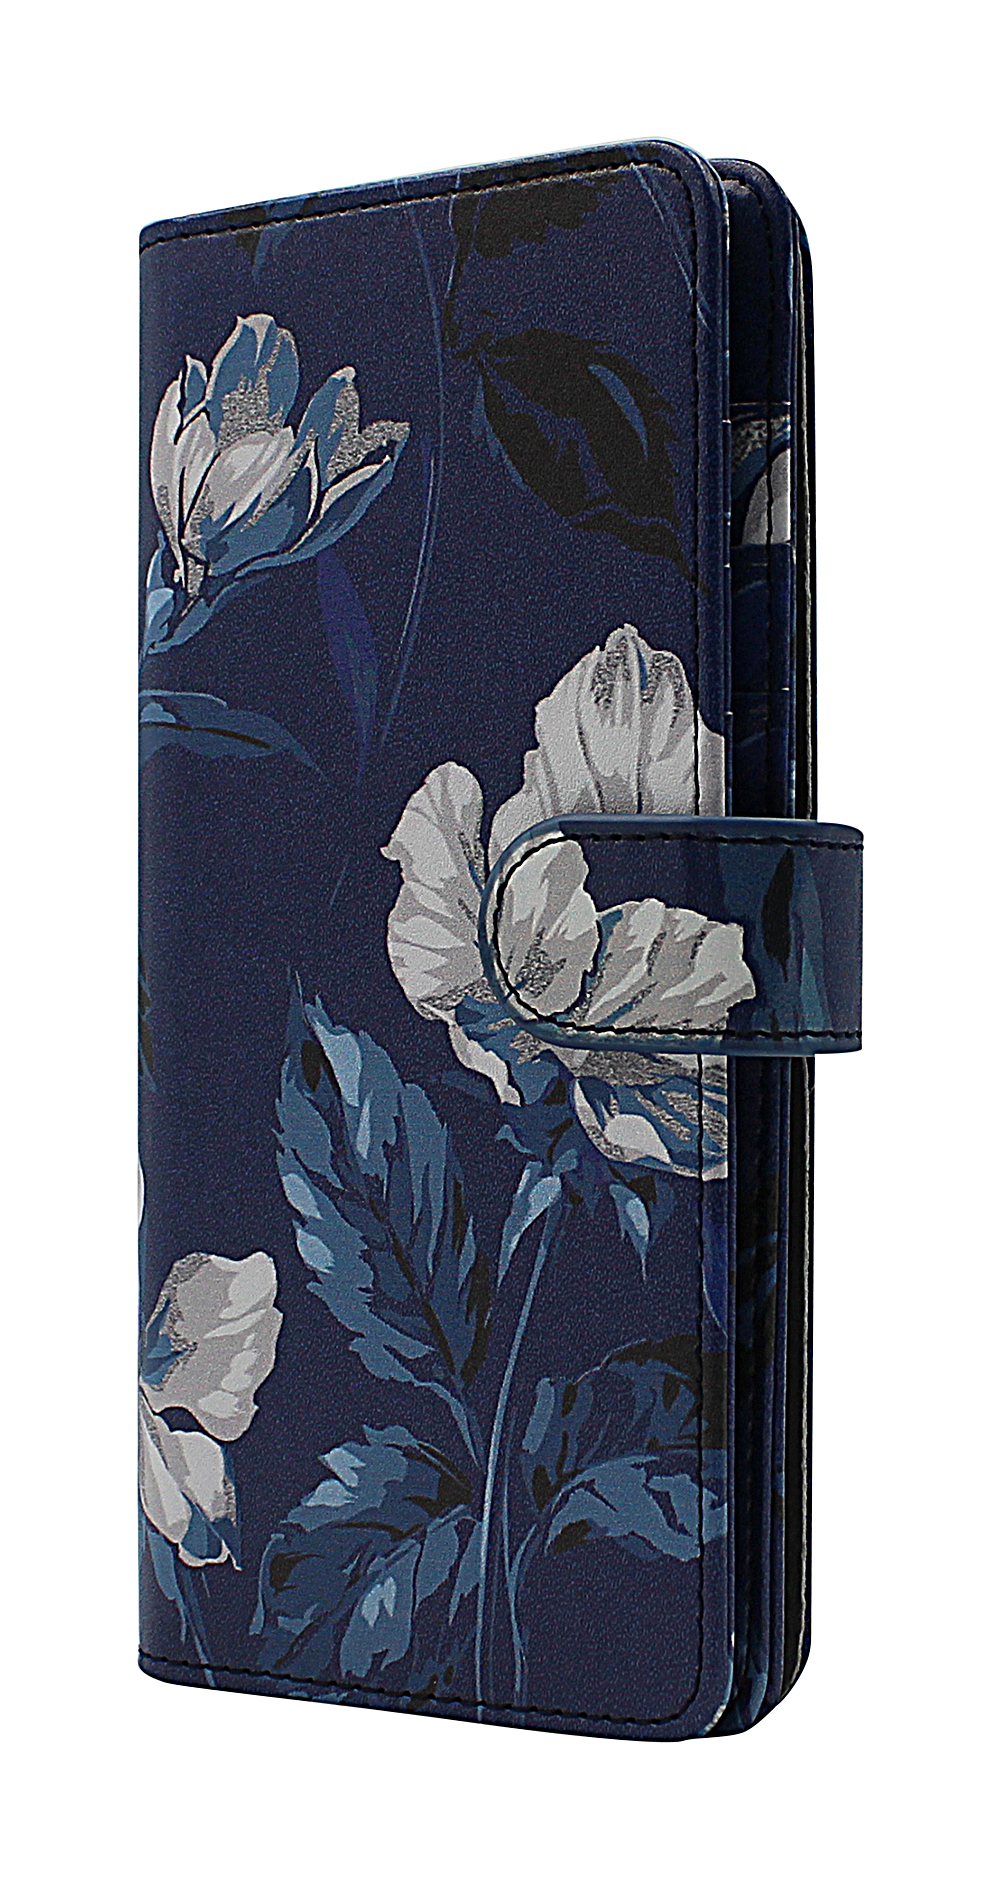 CoverInSkimblocker XL Magnet Designwallet Samsung Galaxy A72 (A725F/DS)